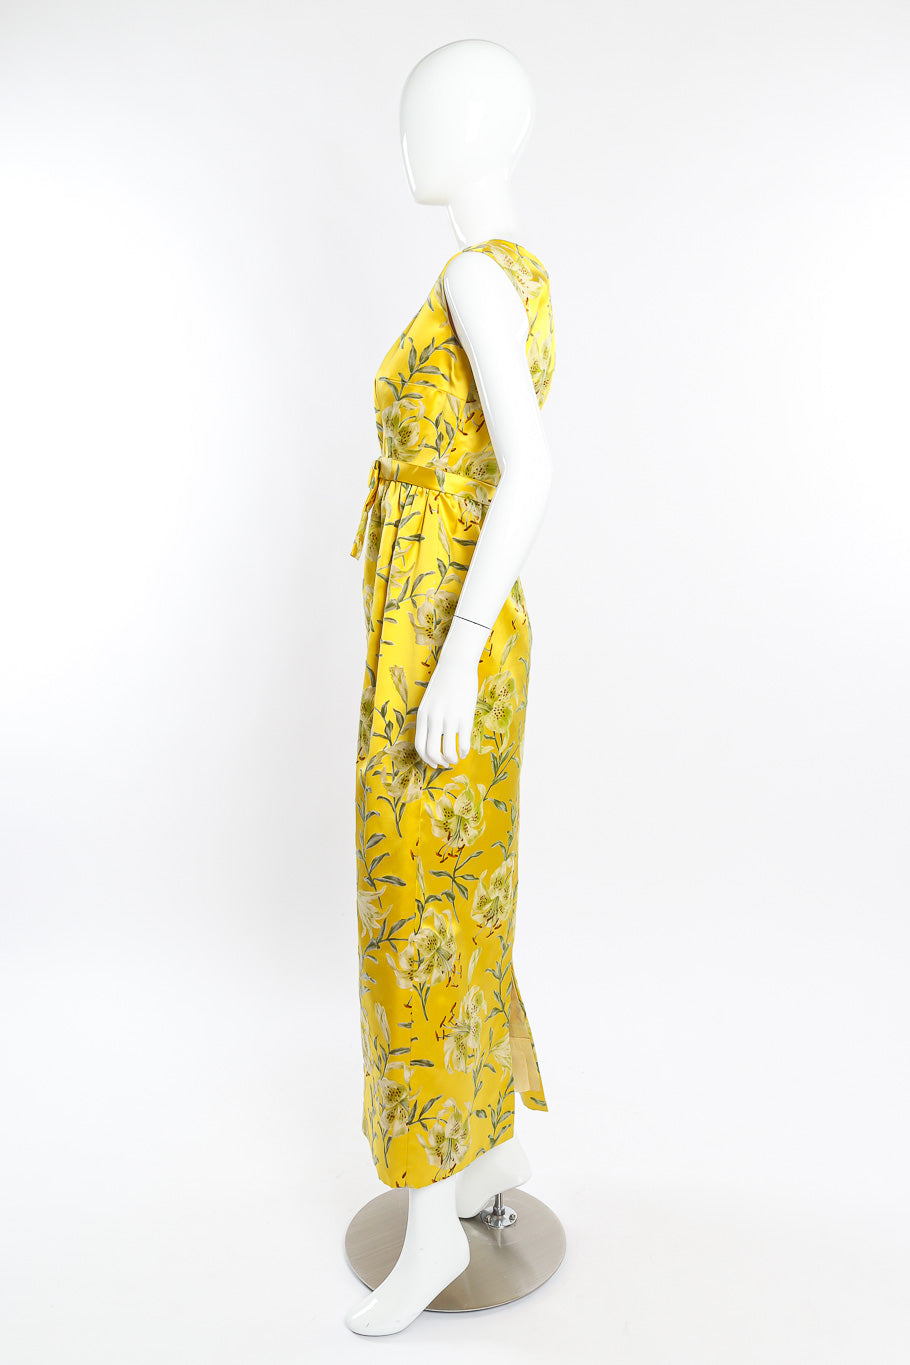 Velvet floral dress by Nat Kaplan on mannequin side @recessla